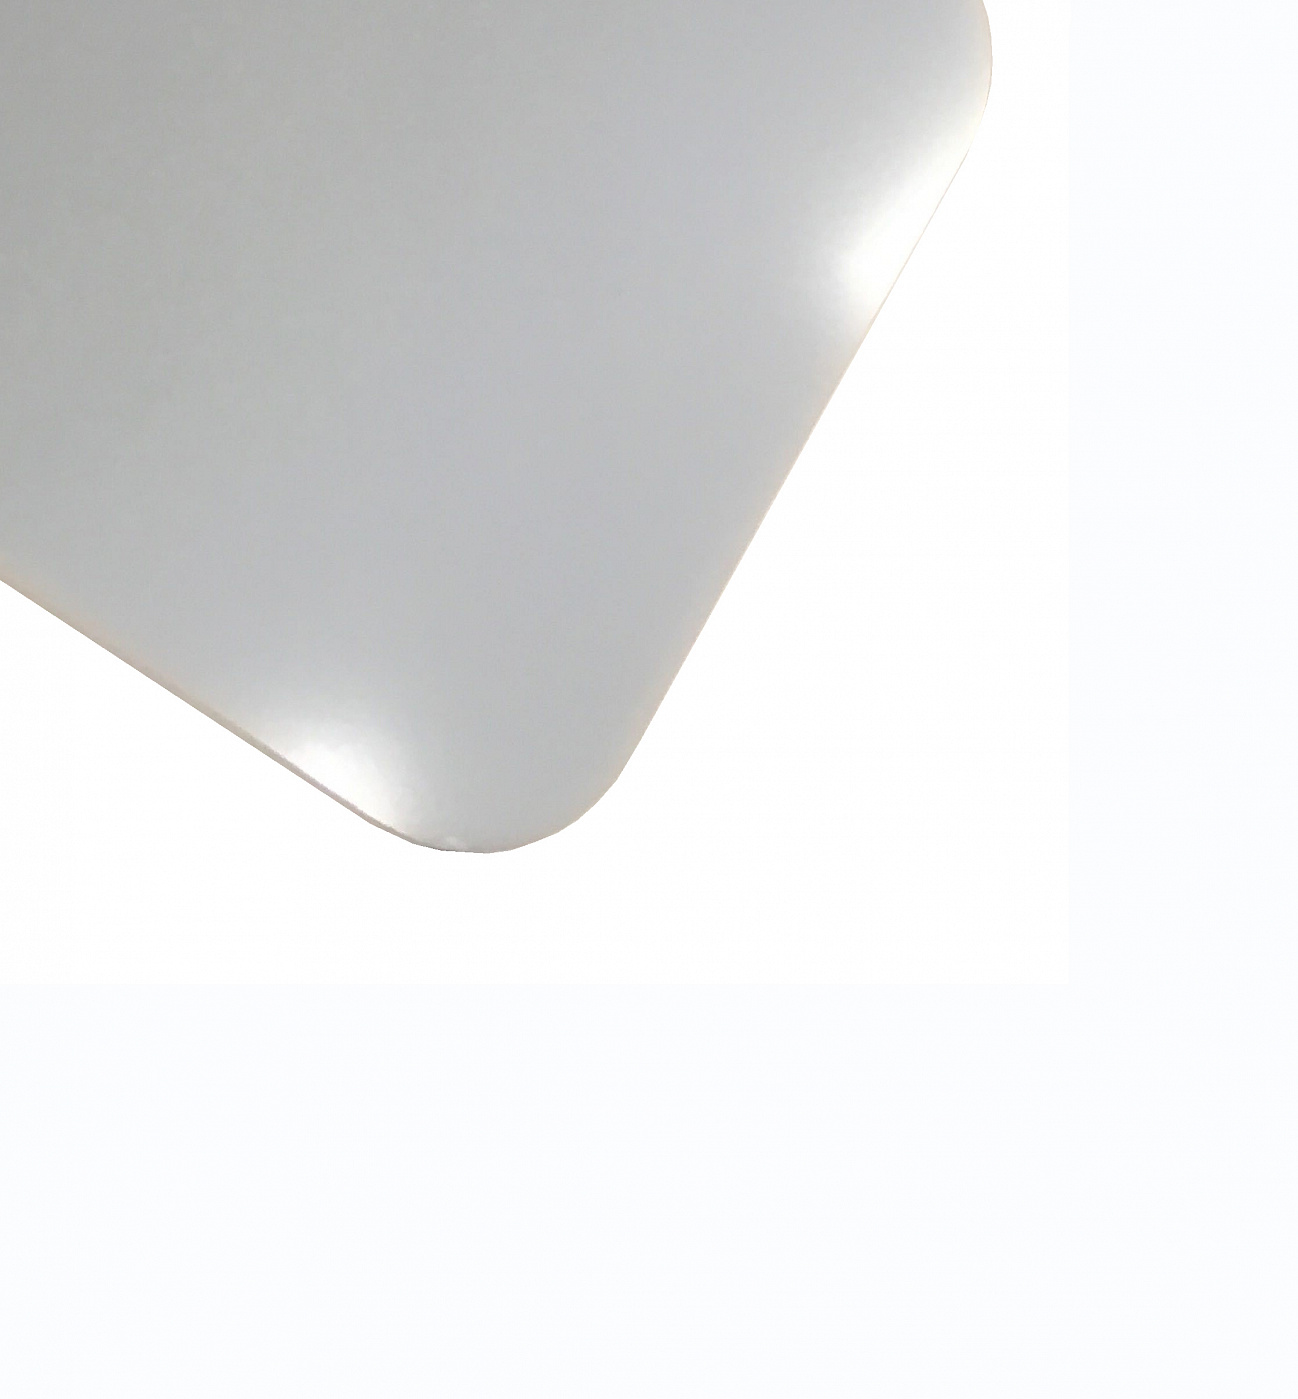 Планшет для пленэра из оргстекла 3 мм, под лист размера 40х60 см, цвет белый планшет минимед для предметных стекол на 20 мест